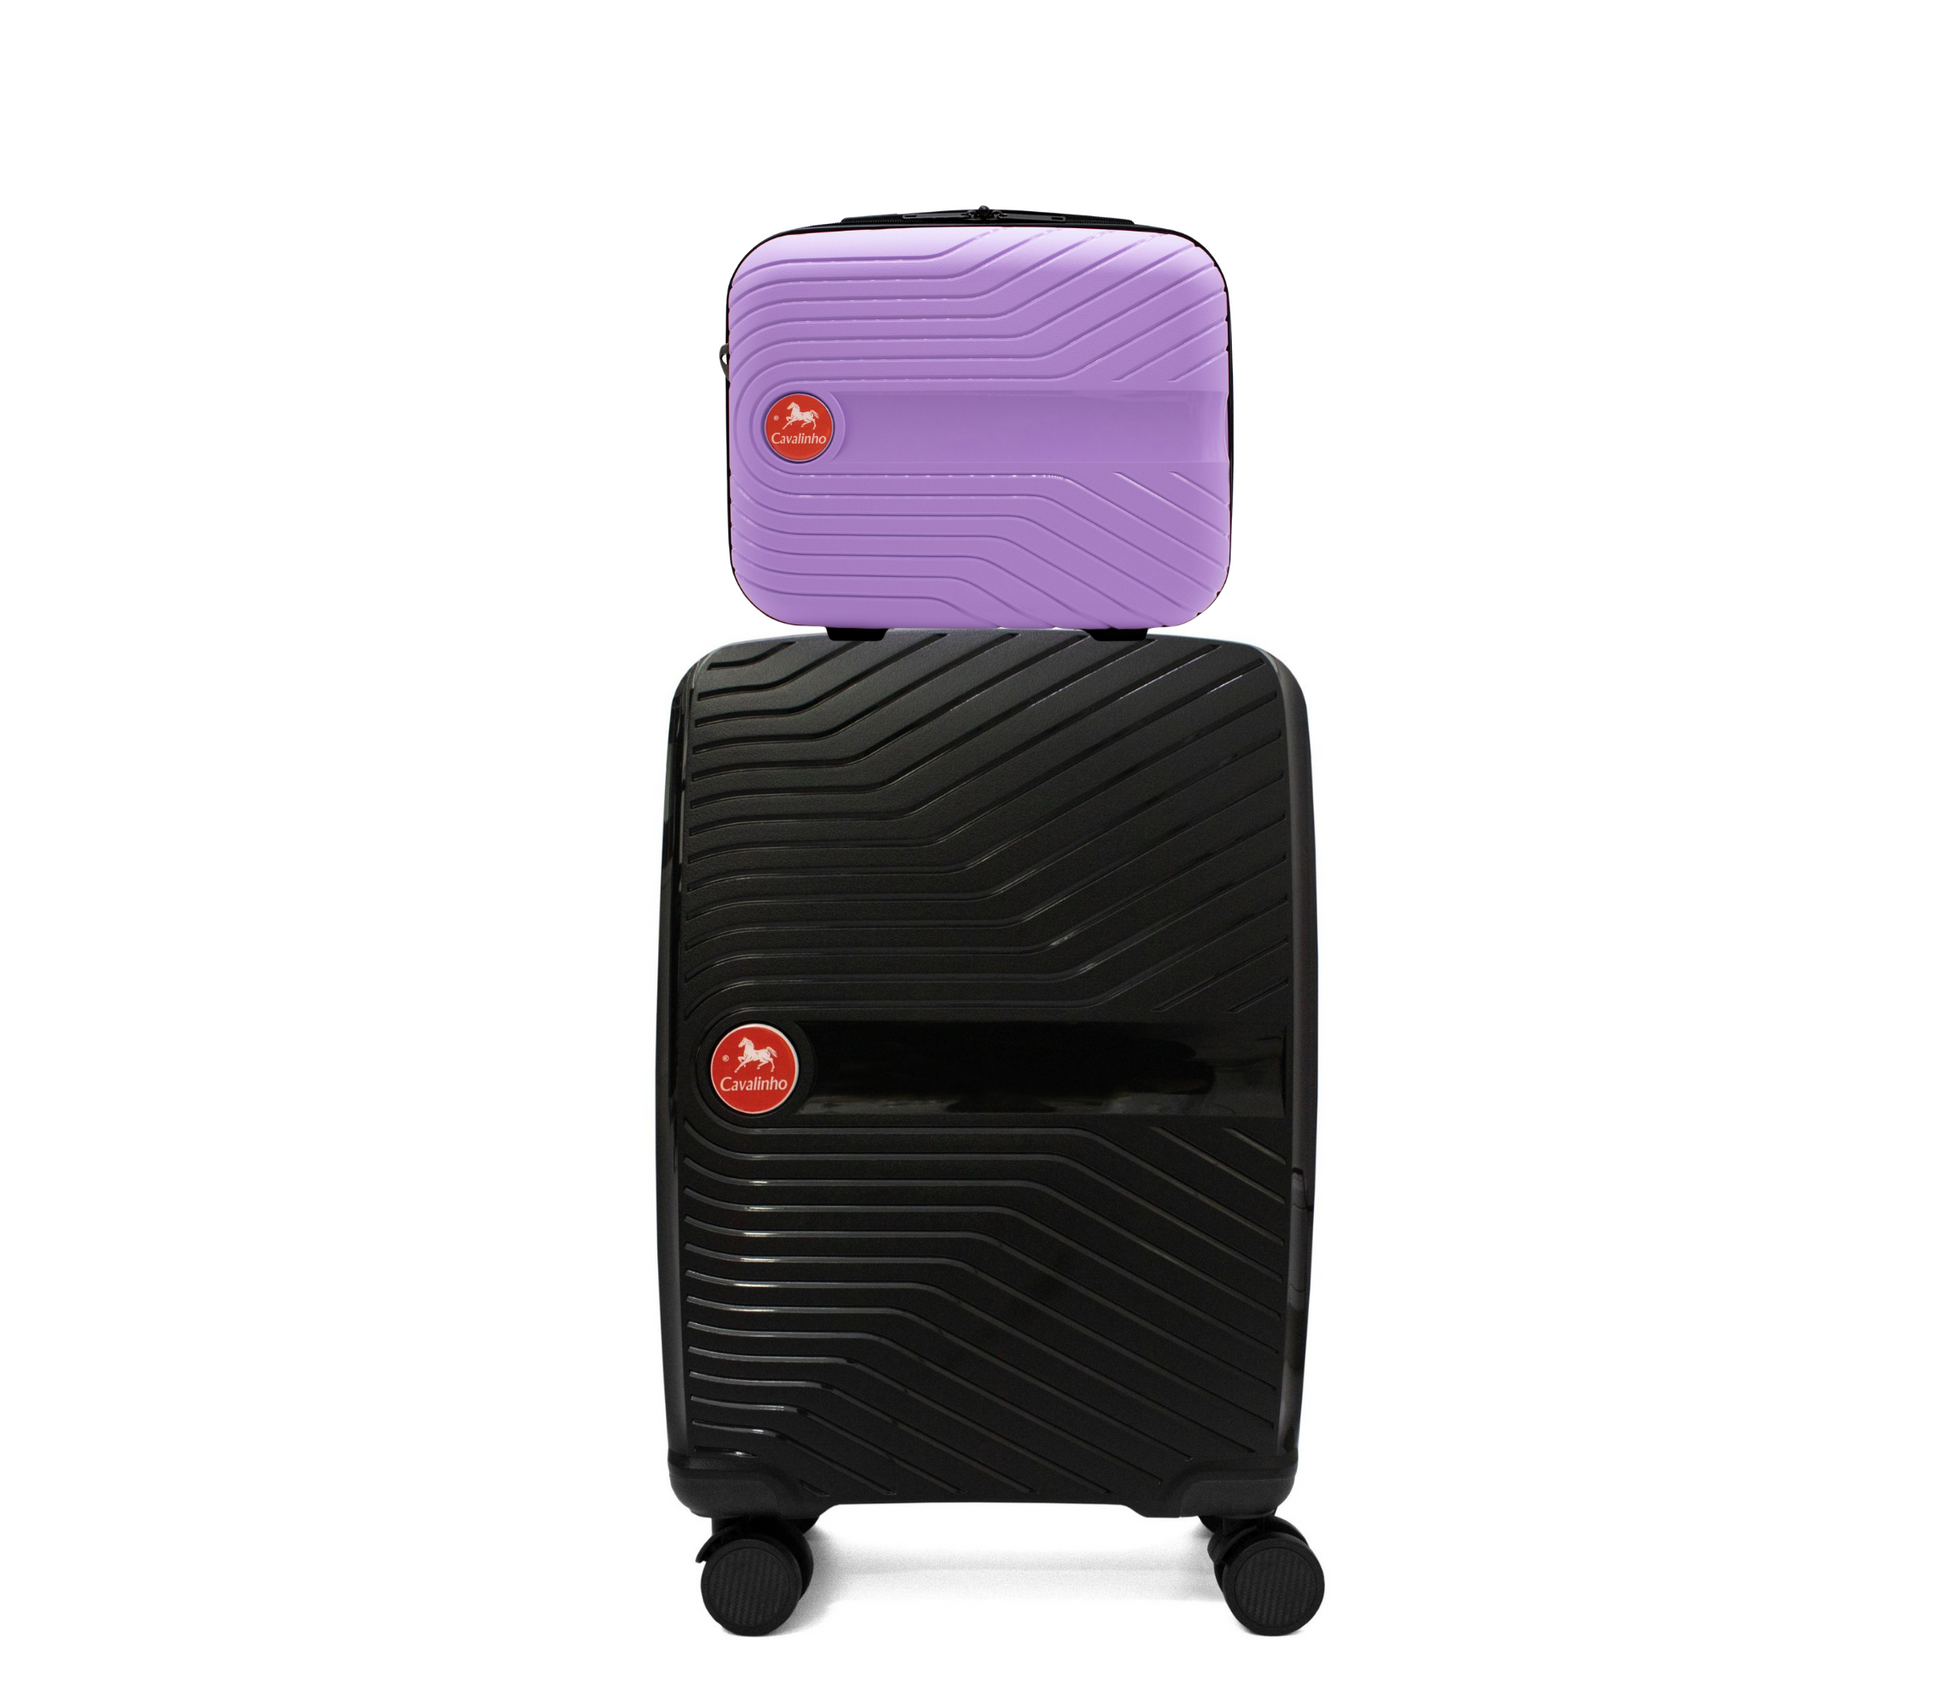 Cavalinho Canada & USA Colorful 2 Piece Luggage Set (15" & 19") - Lilac Black - 68020004.3901.S1519._1